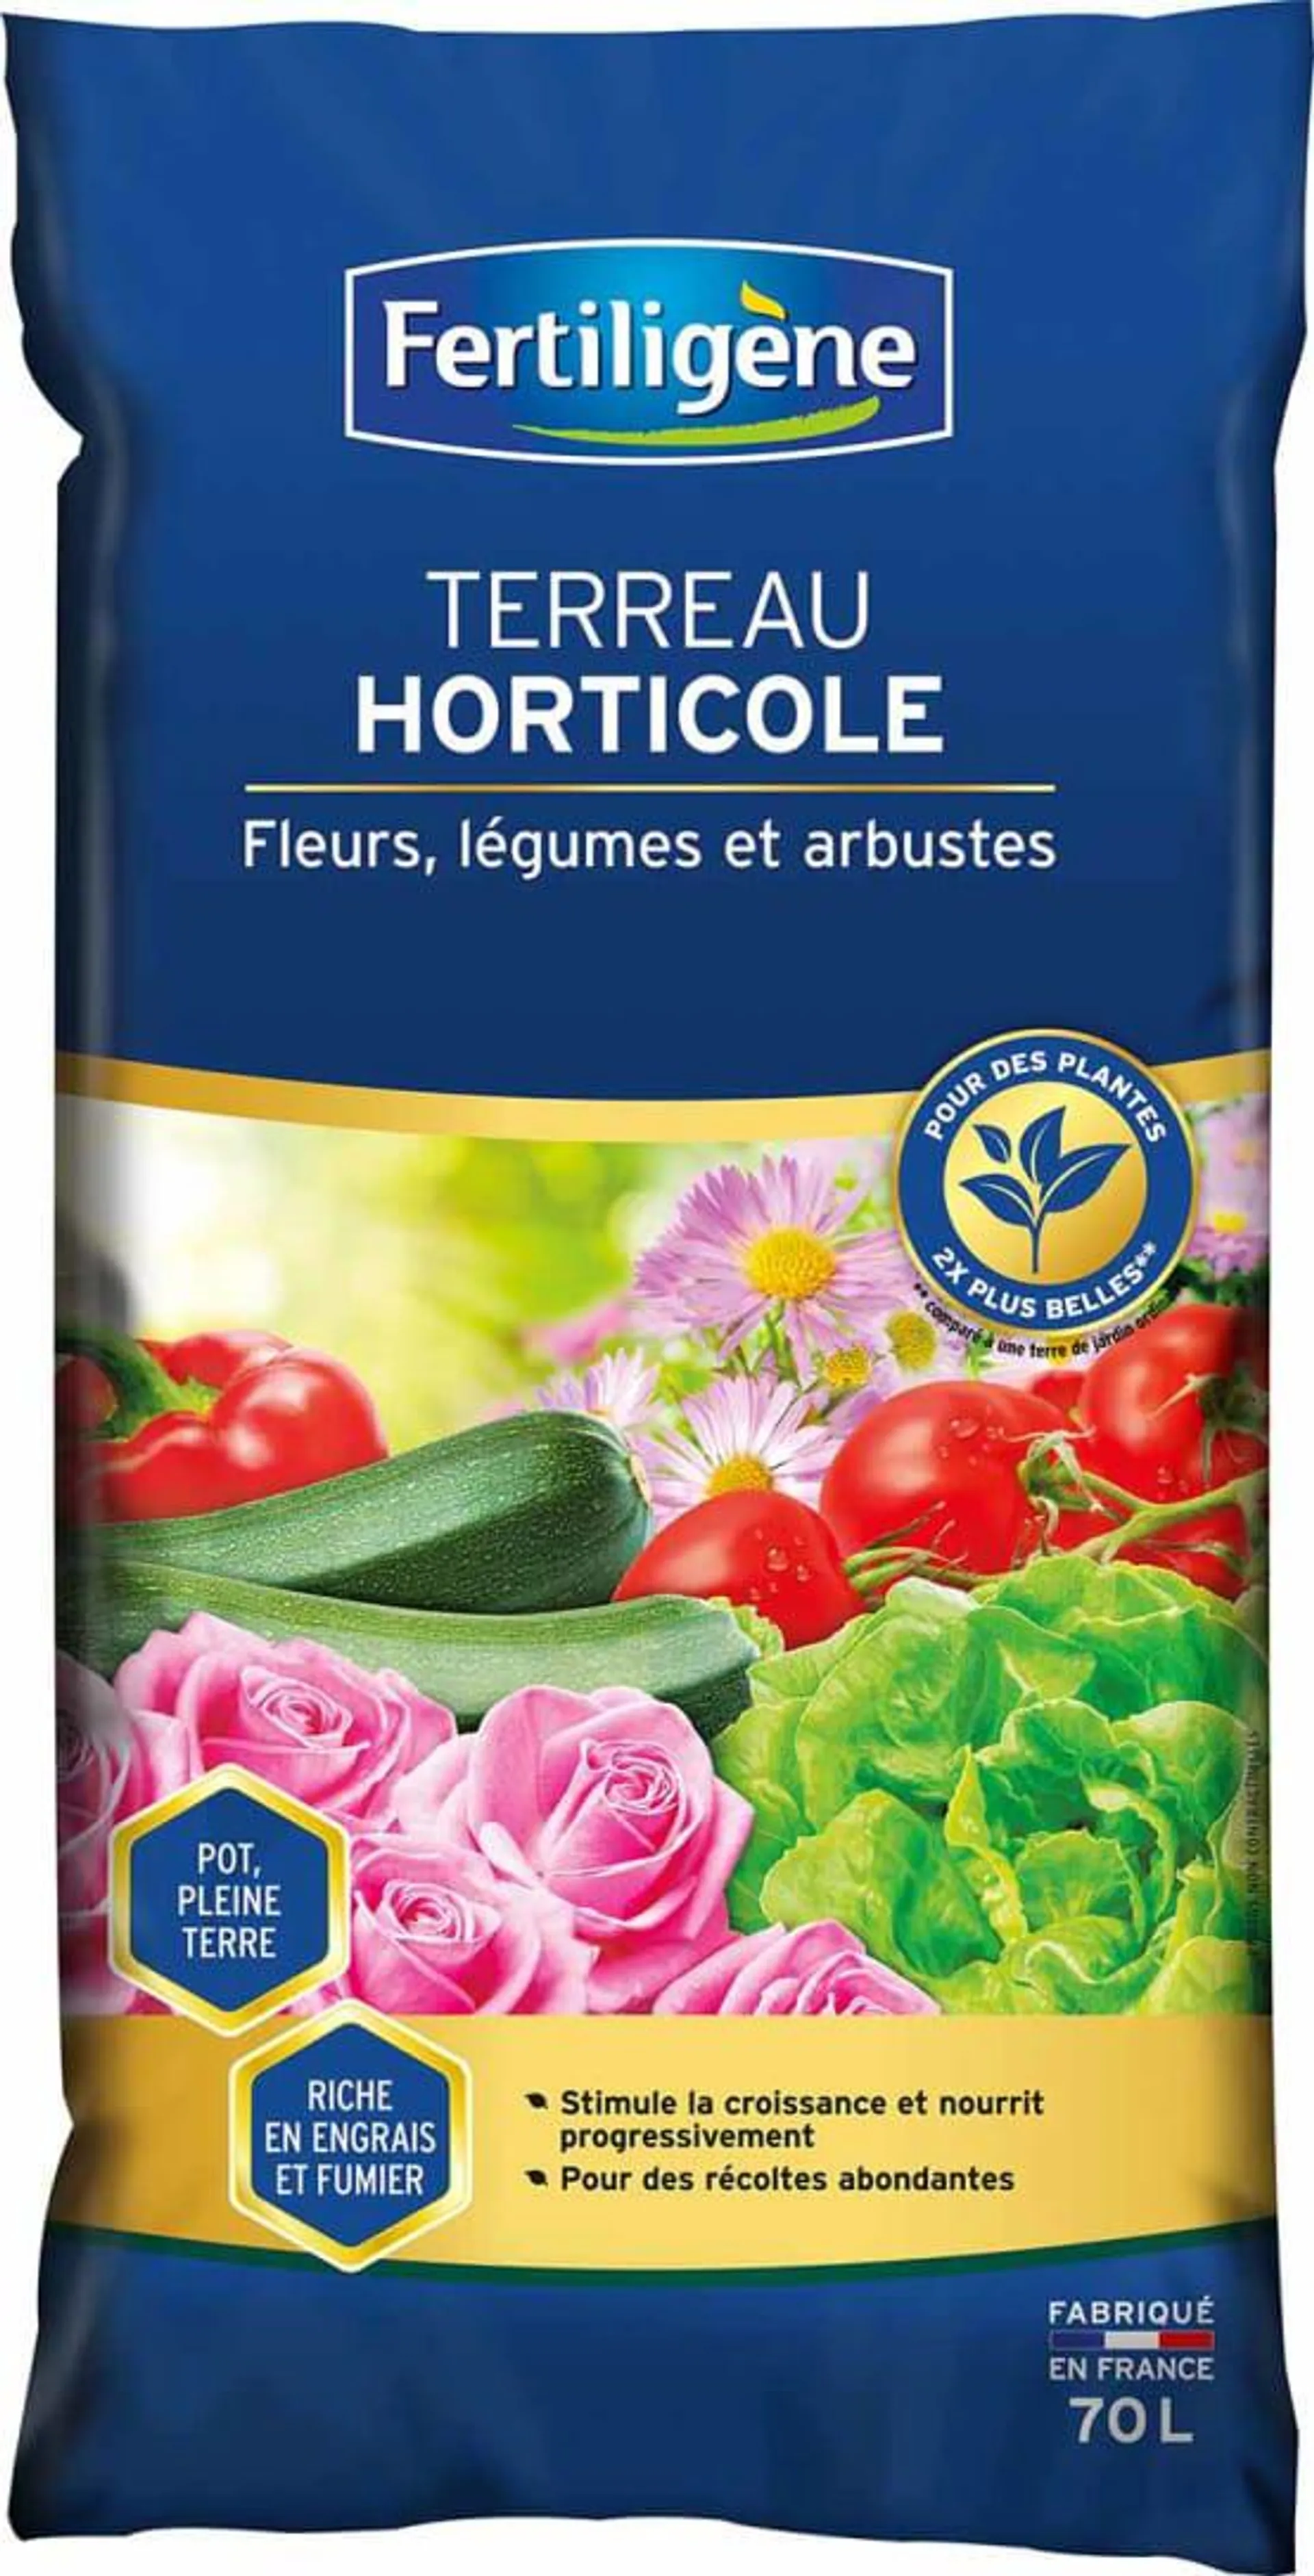 Fertiligène - Terreau horticole fleurs, légumes et arbustes 70L